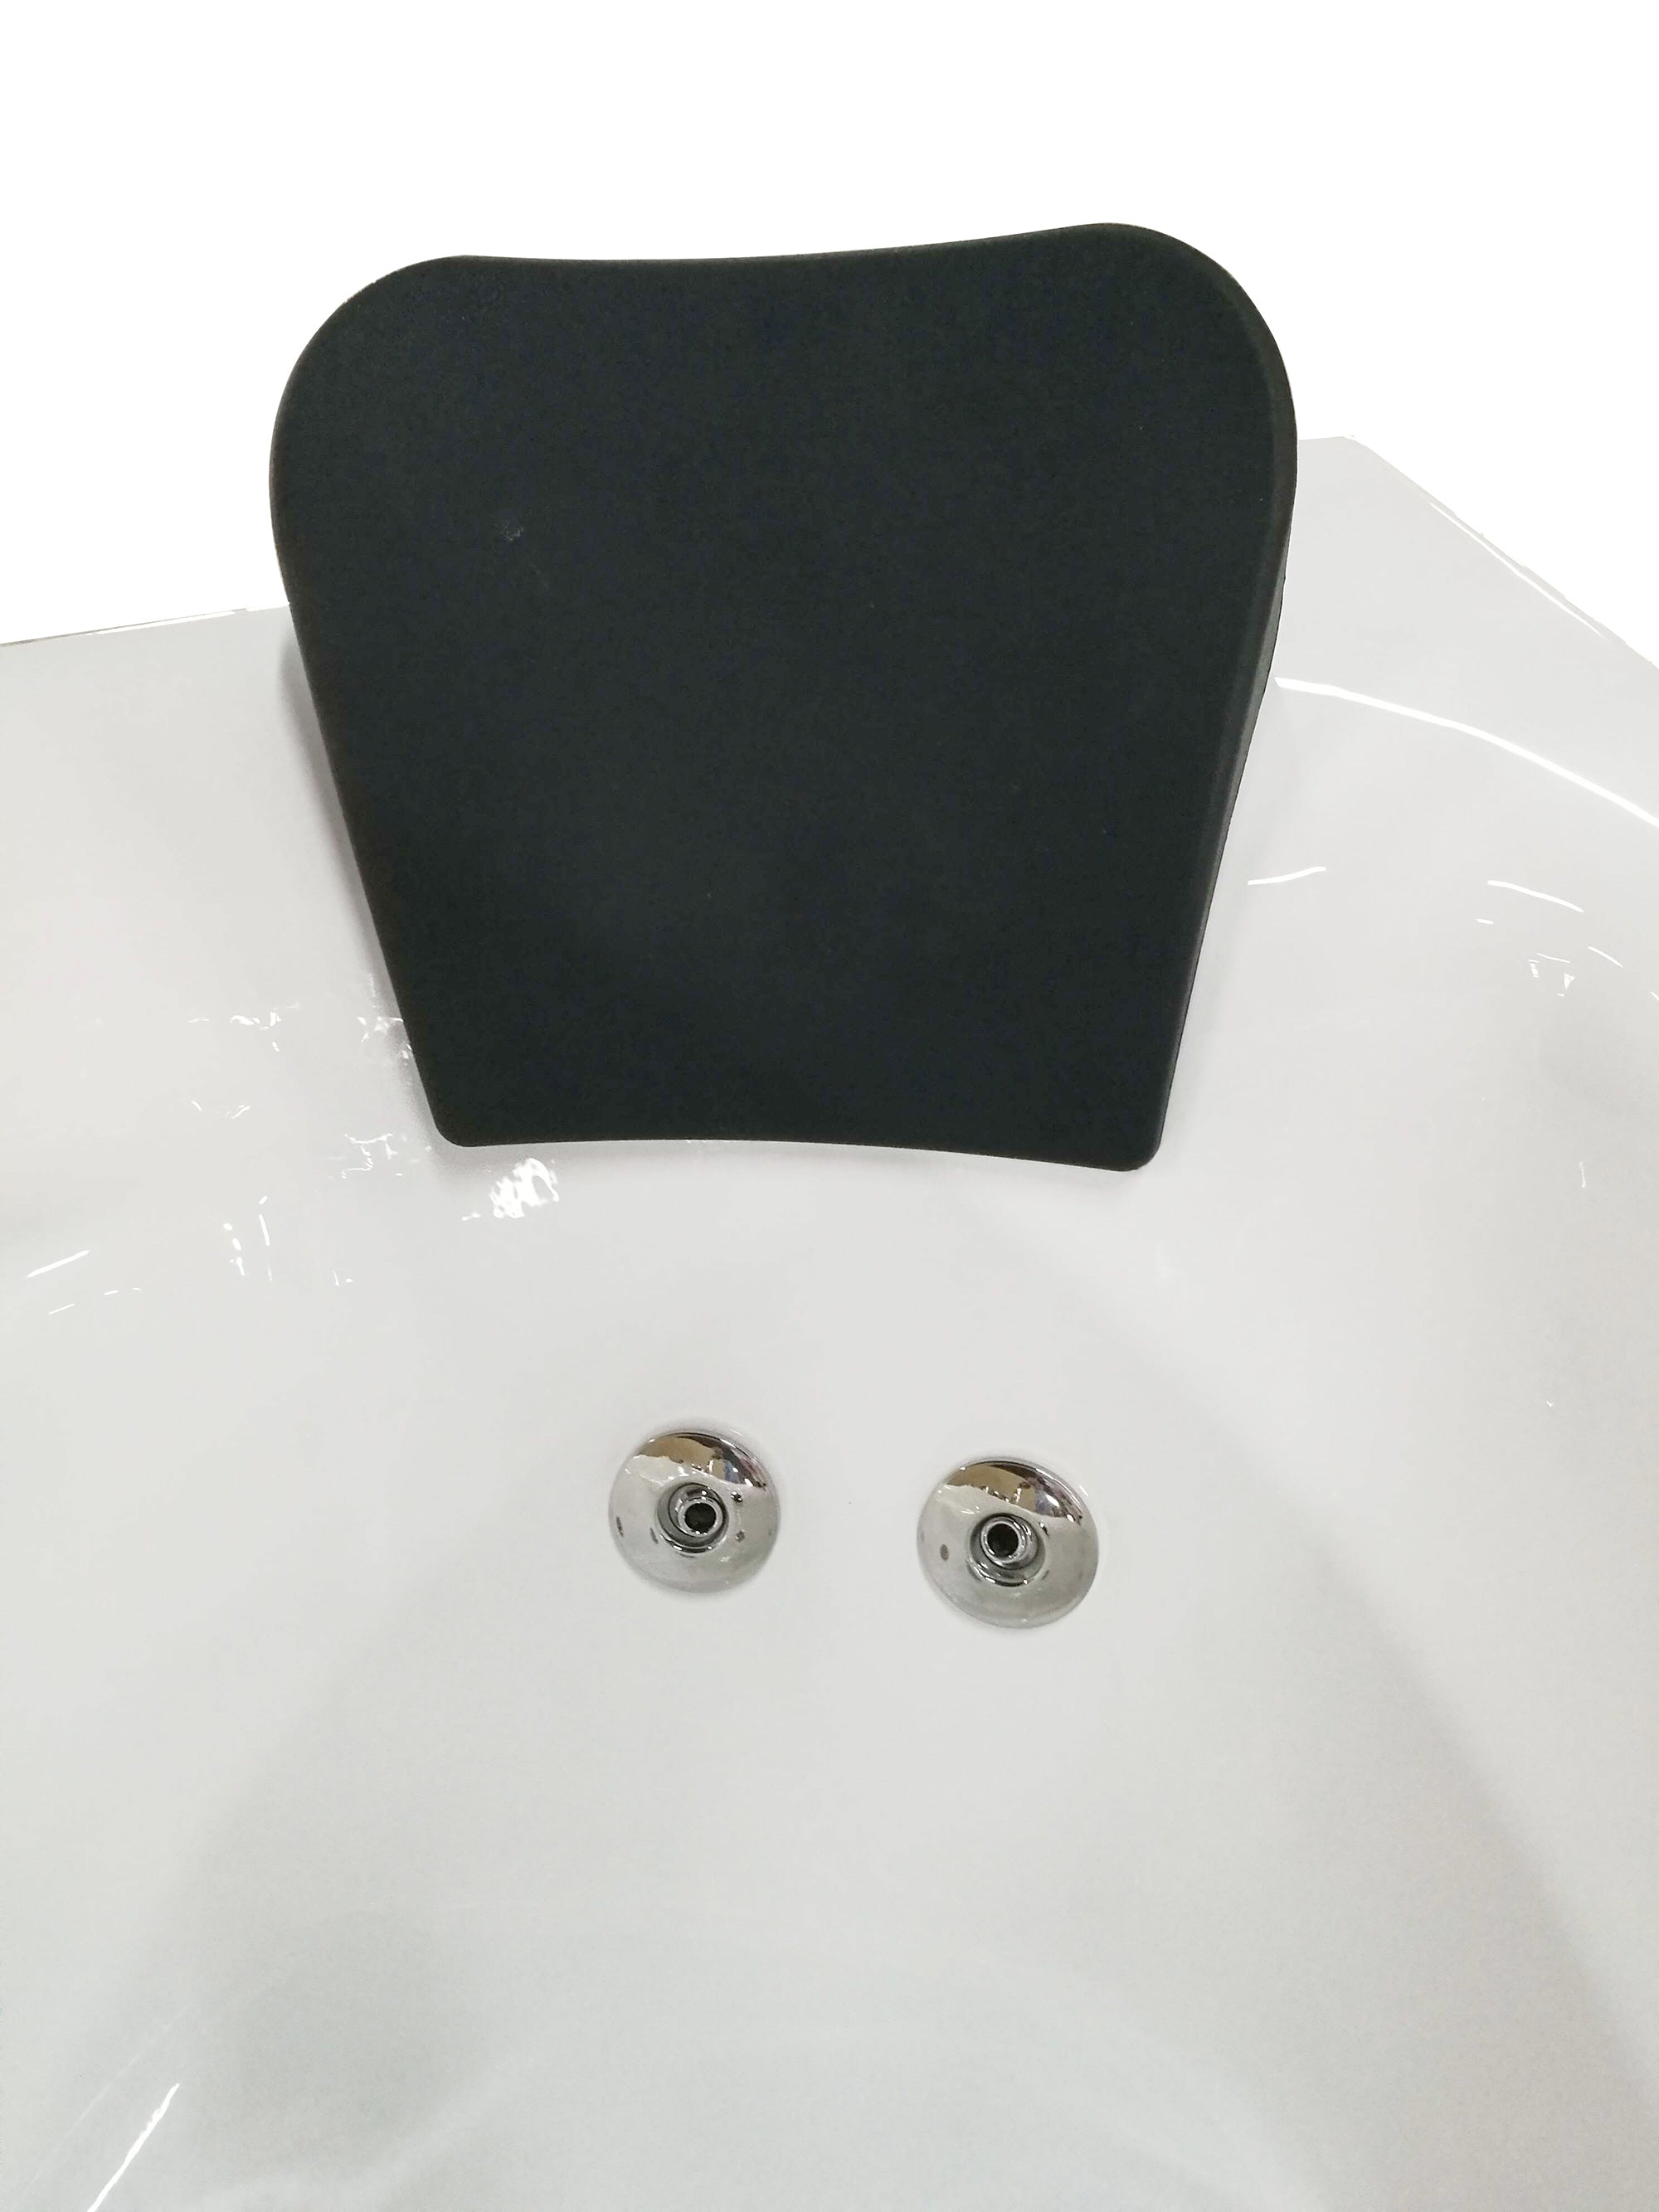 EAGO AM161 Corner Whirlpool Bath Tub White Acrylic